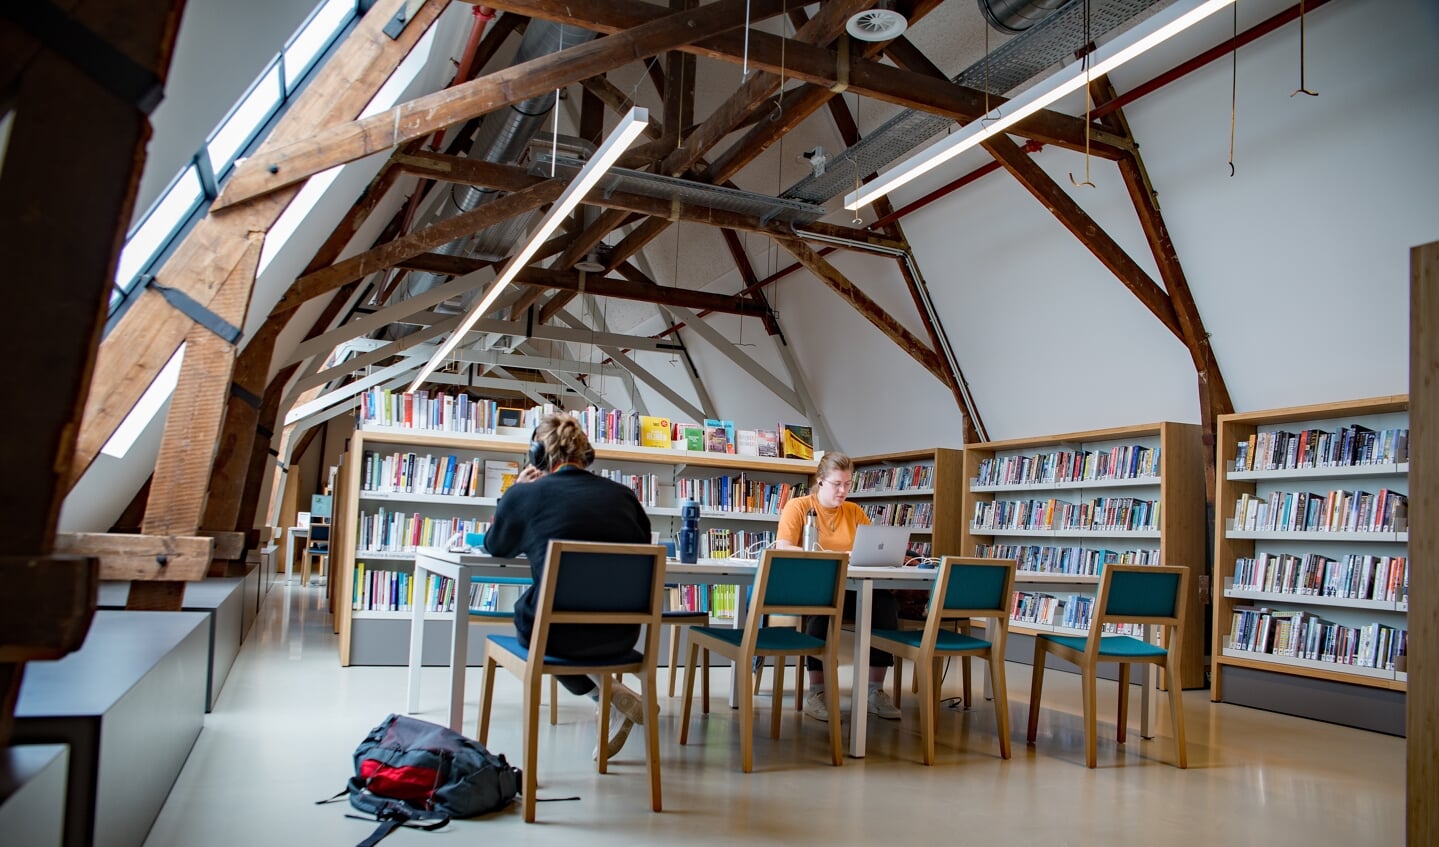 Studenten gebruiken de bibliotheek als rustige werkplek.